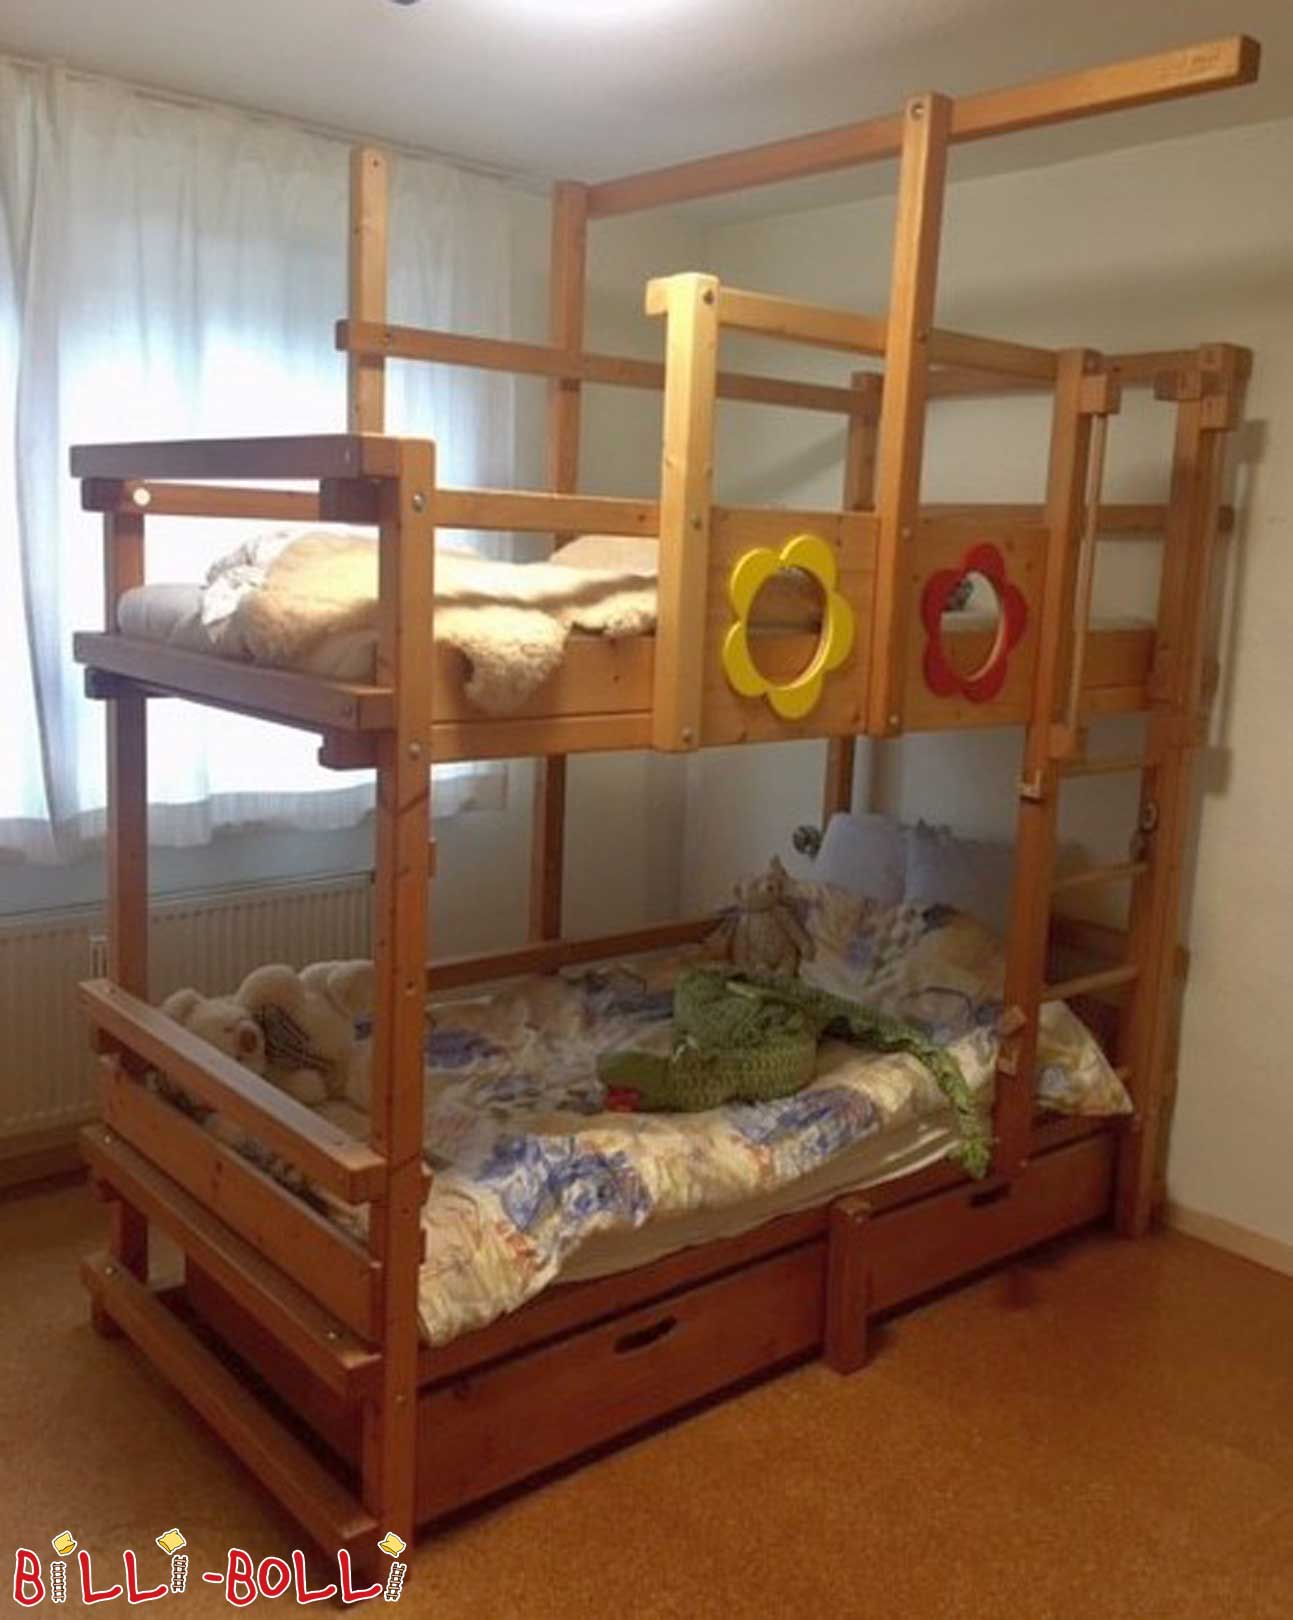 बंक बेड, 90 x 200 सेमी, तेल से सना हुआ लच्छेदार पाइन (कोटि: चारपाई बिस्तर का इस्तेमाल किया)